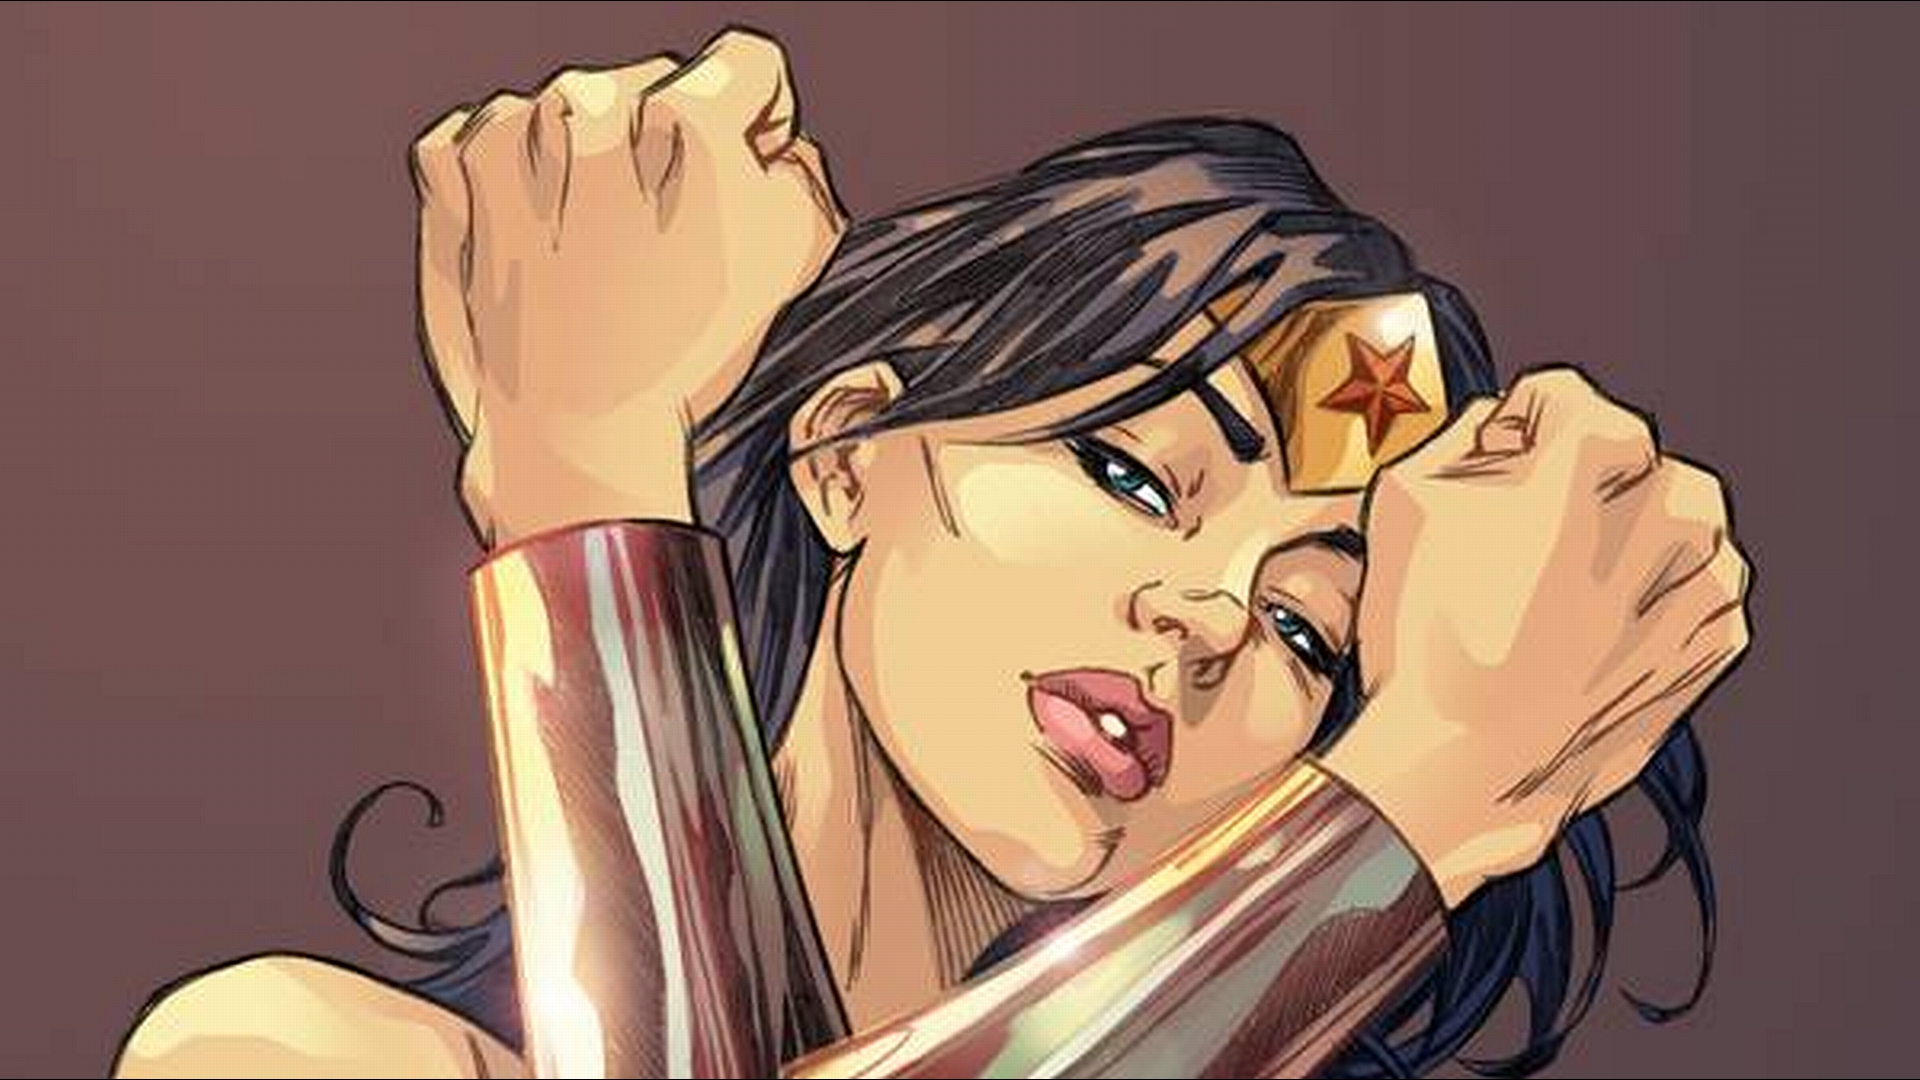 Desktop wallpaper featuring Wonder Woman from comics.